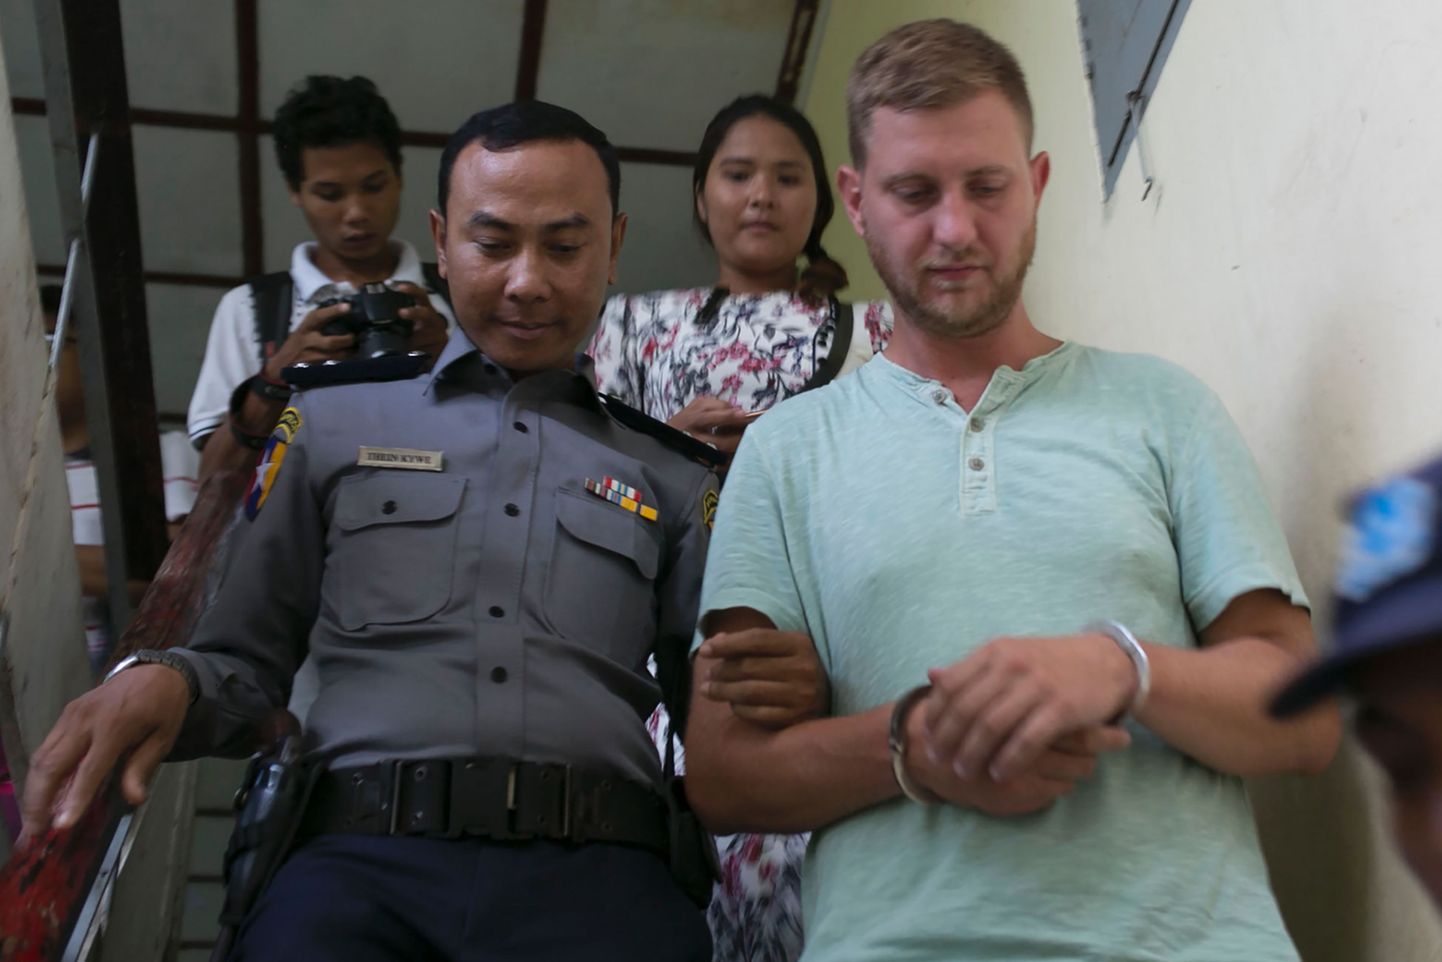 Arreteeritud turist Klaas Haytema